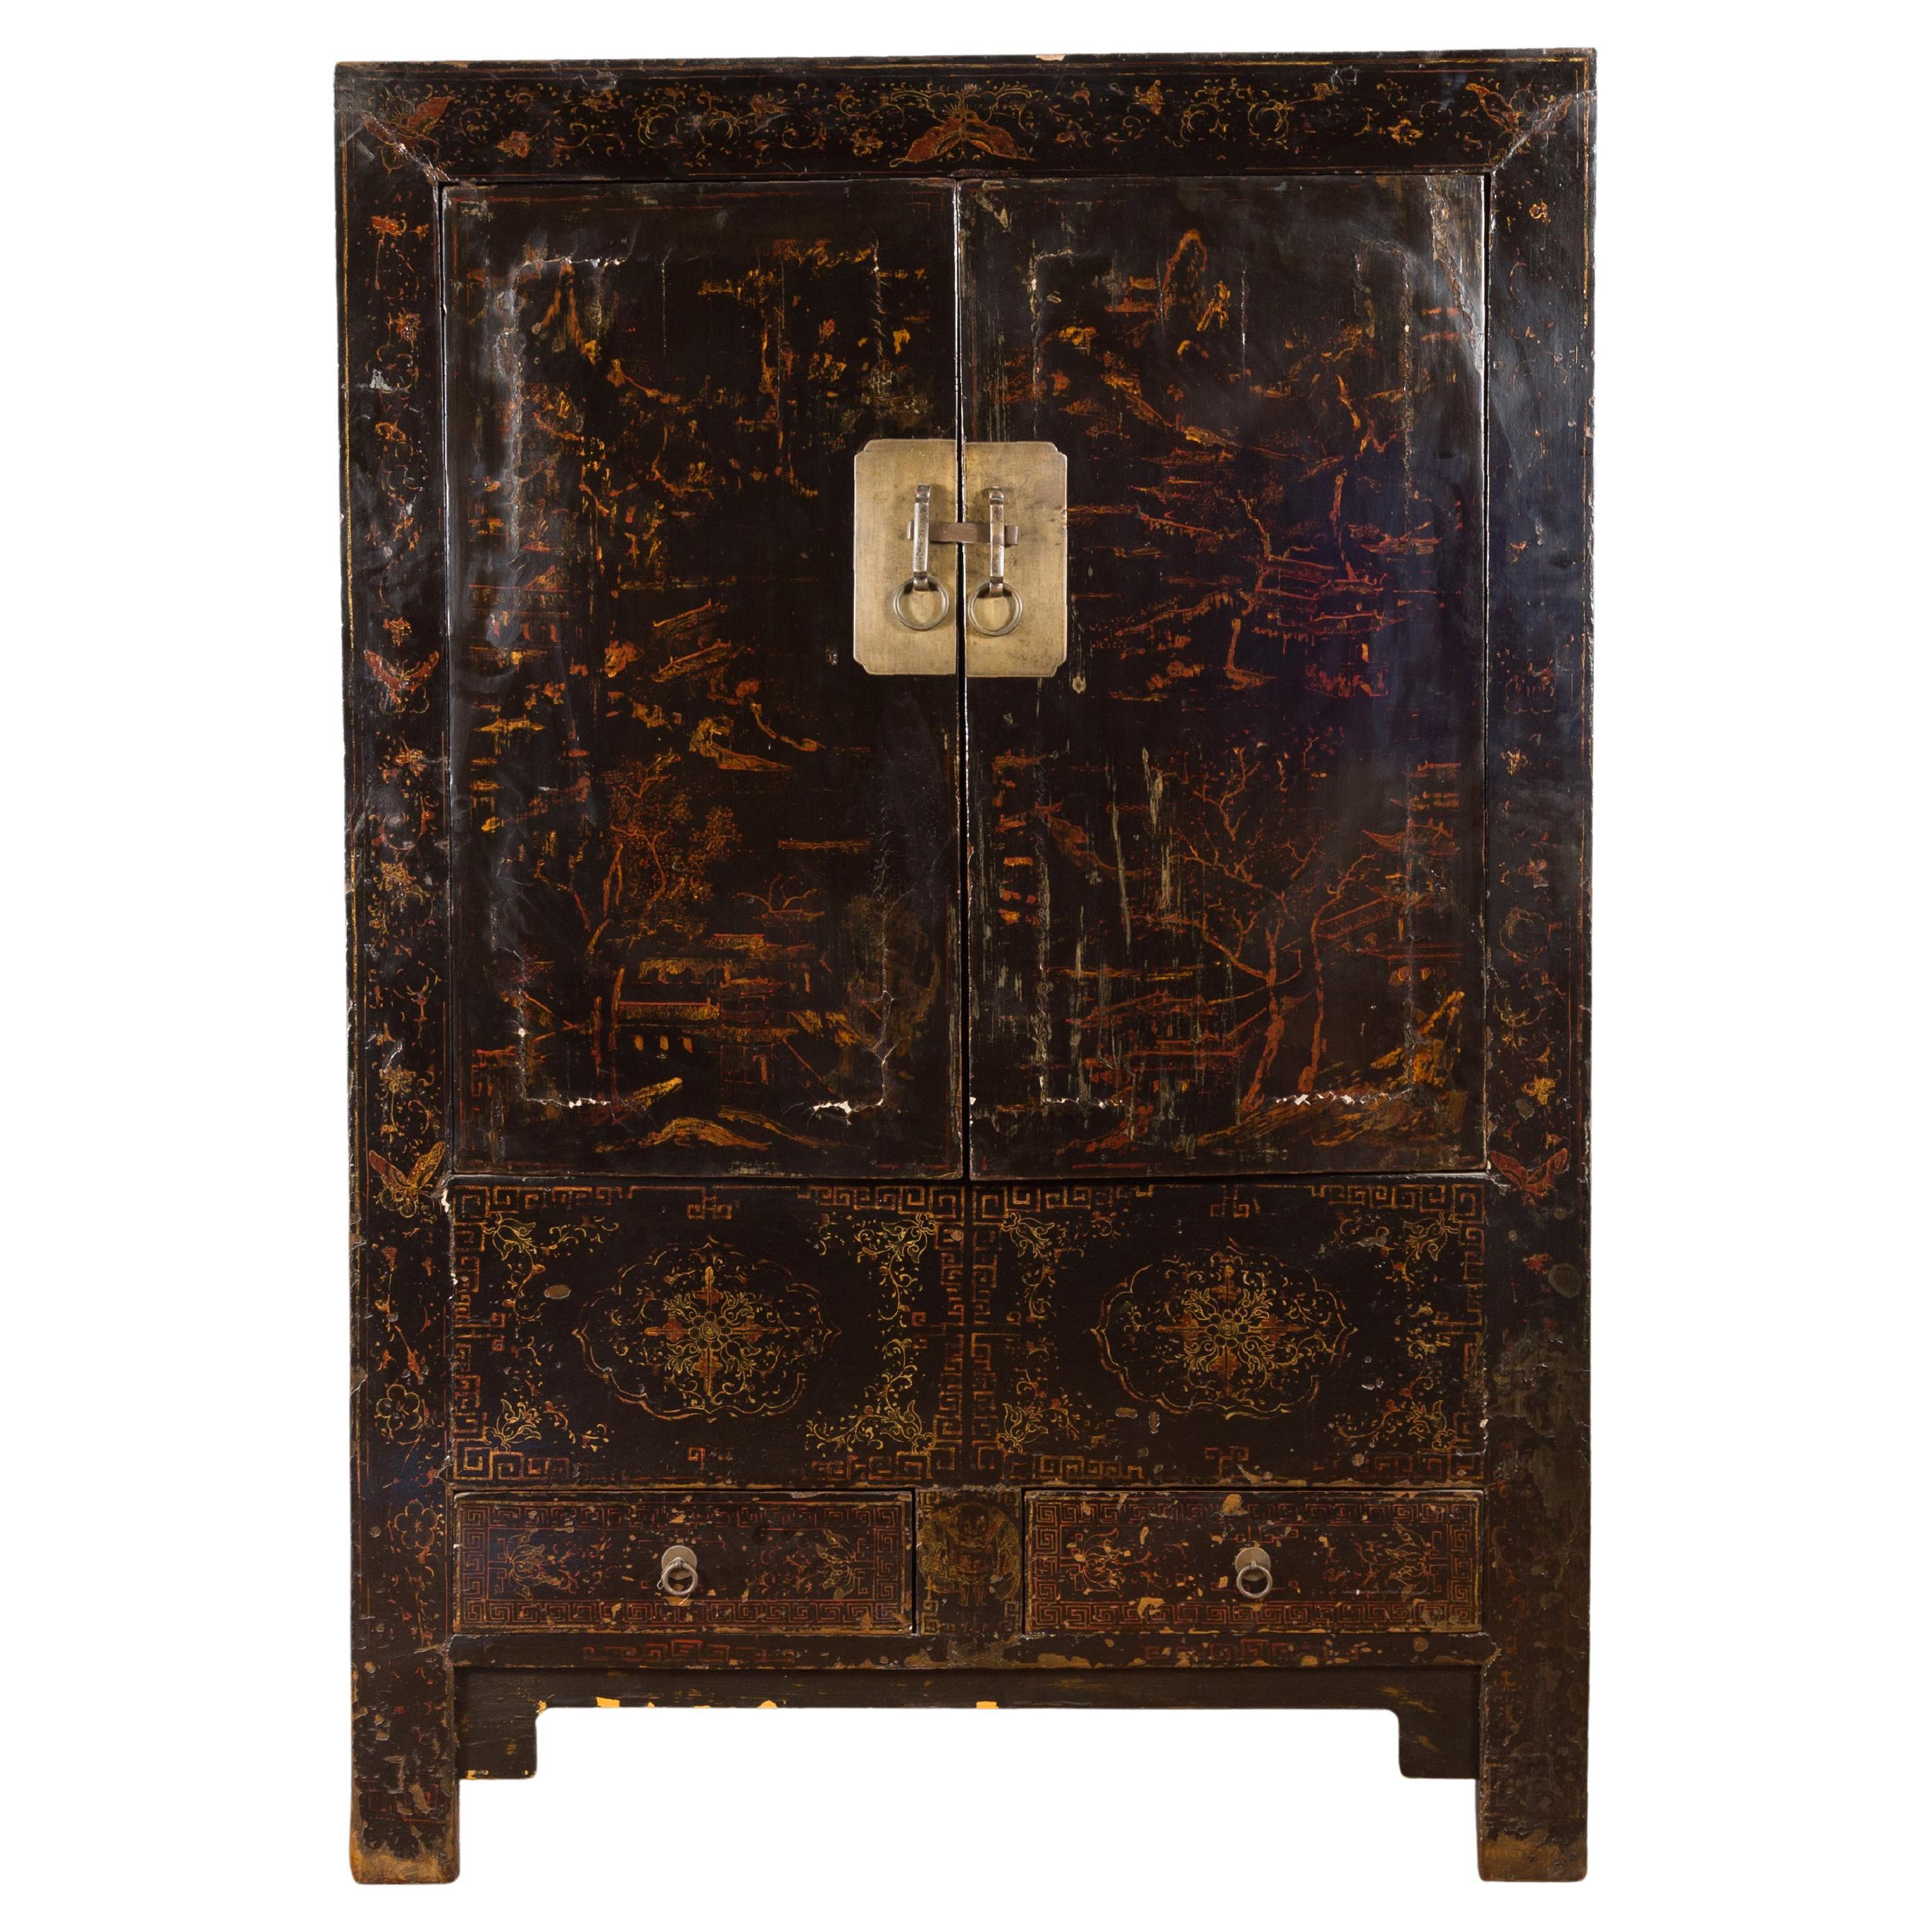 Cabinet de la dynastie chinoise Qing du 19ème siècle avec finition originale en laque noire